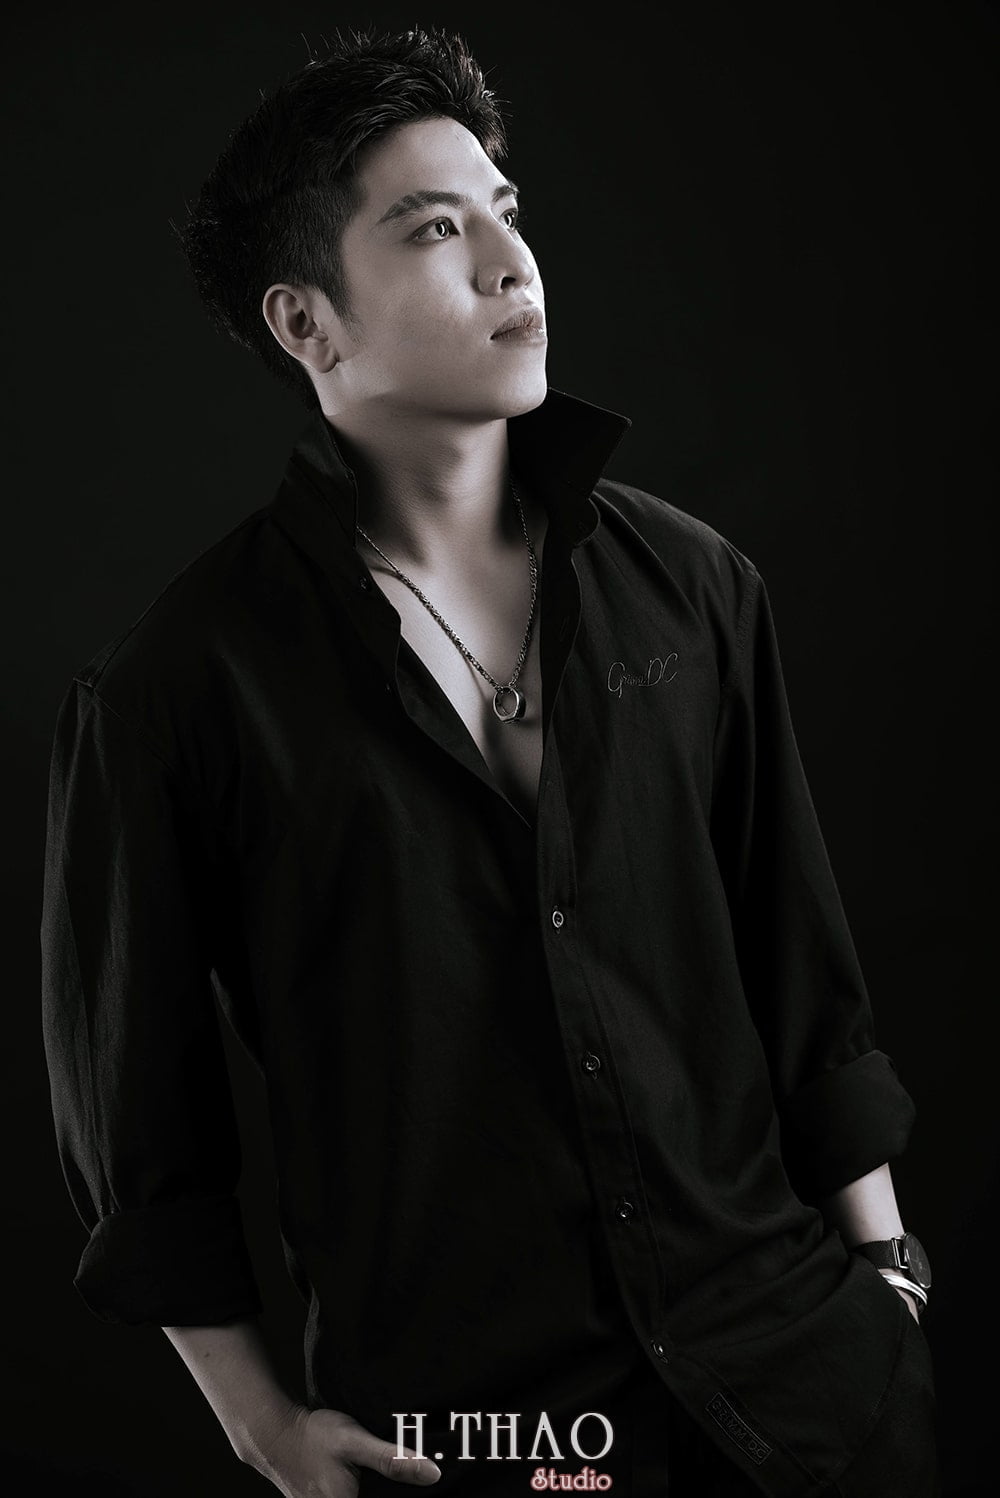 Anh profile style Han Quoc 3 min - Album ảnh profile bạn Dương phong cách hàn quốc - HThao Studio